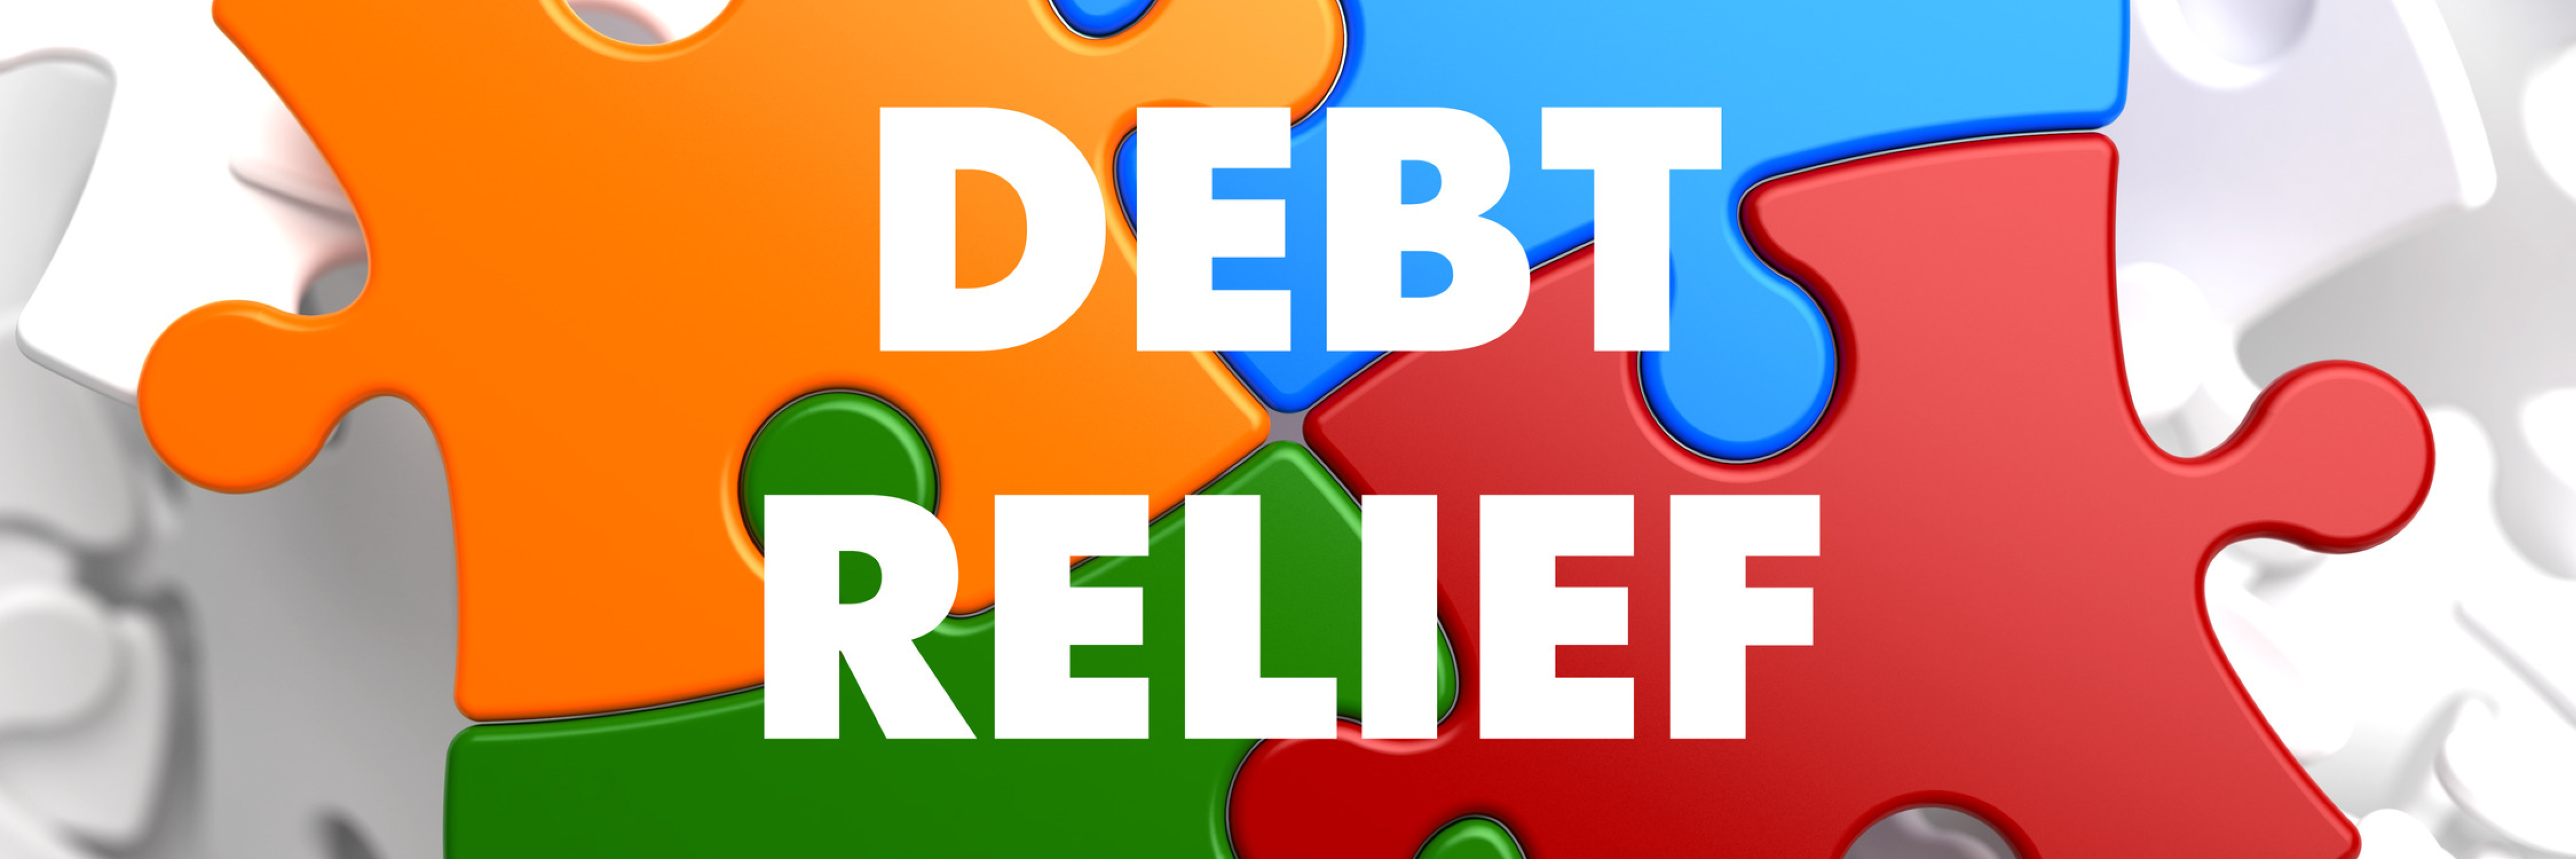 dom debt relief client services